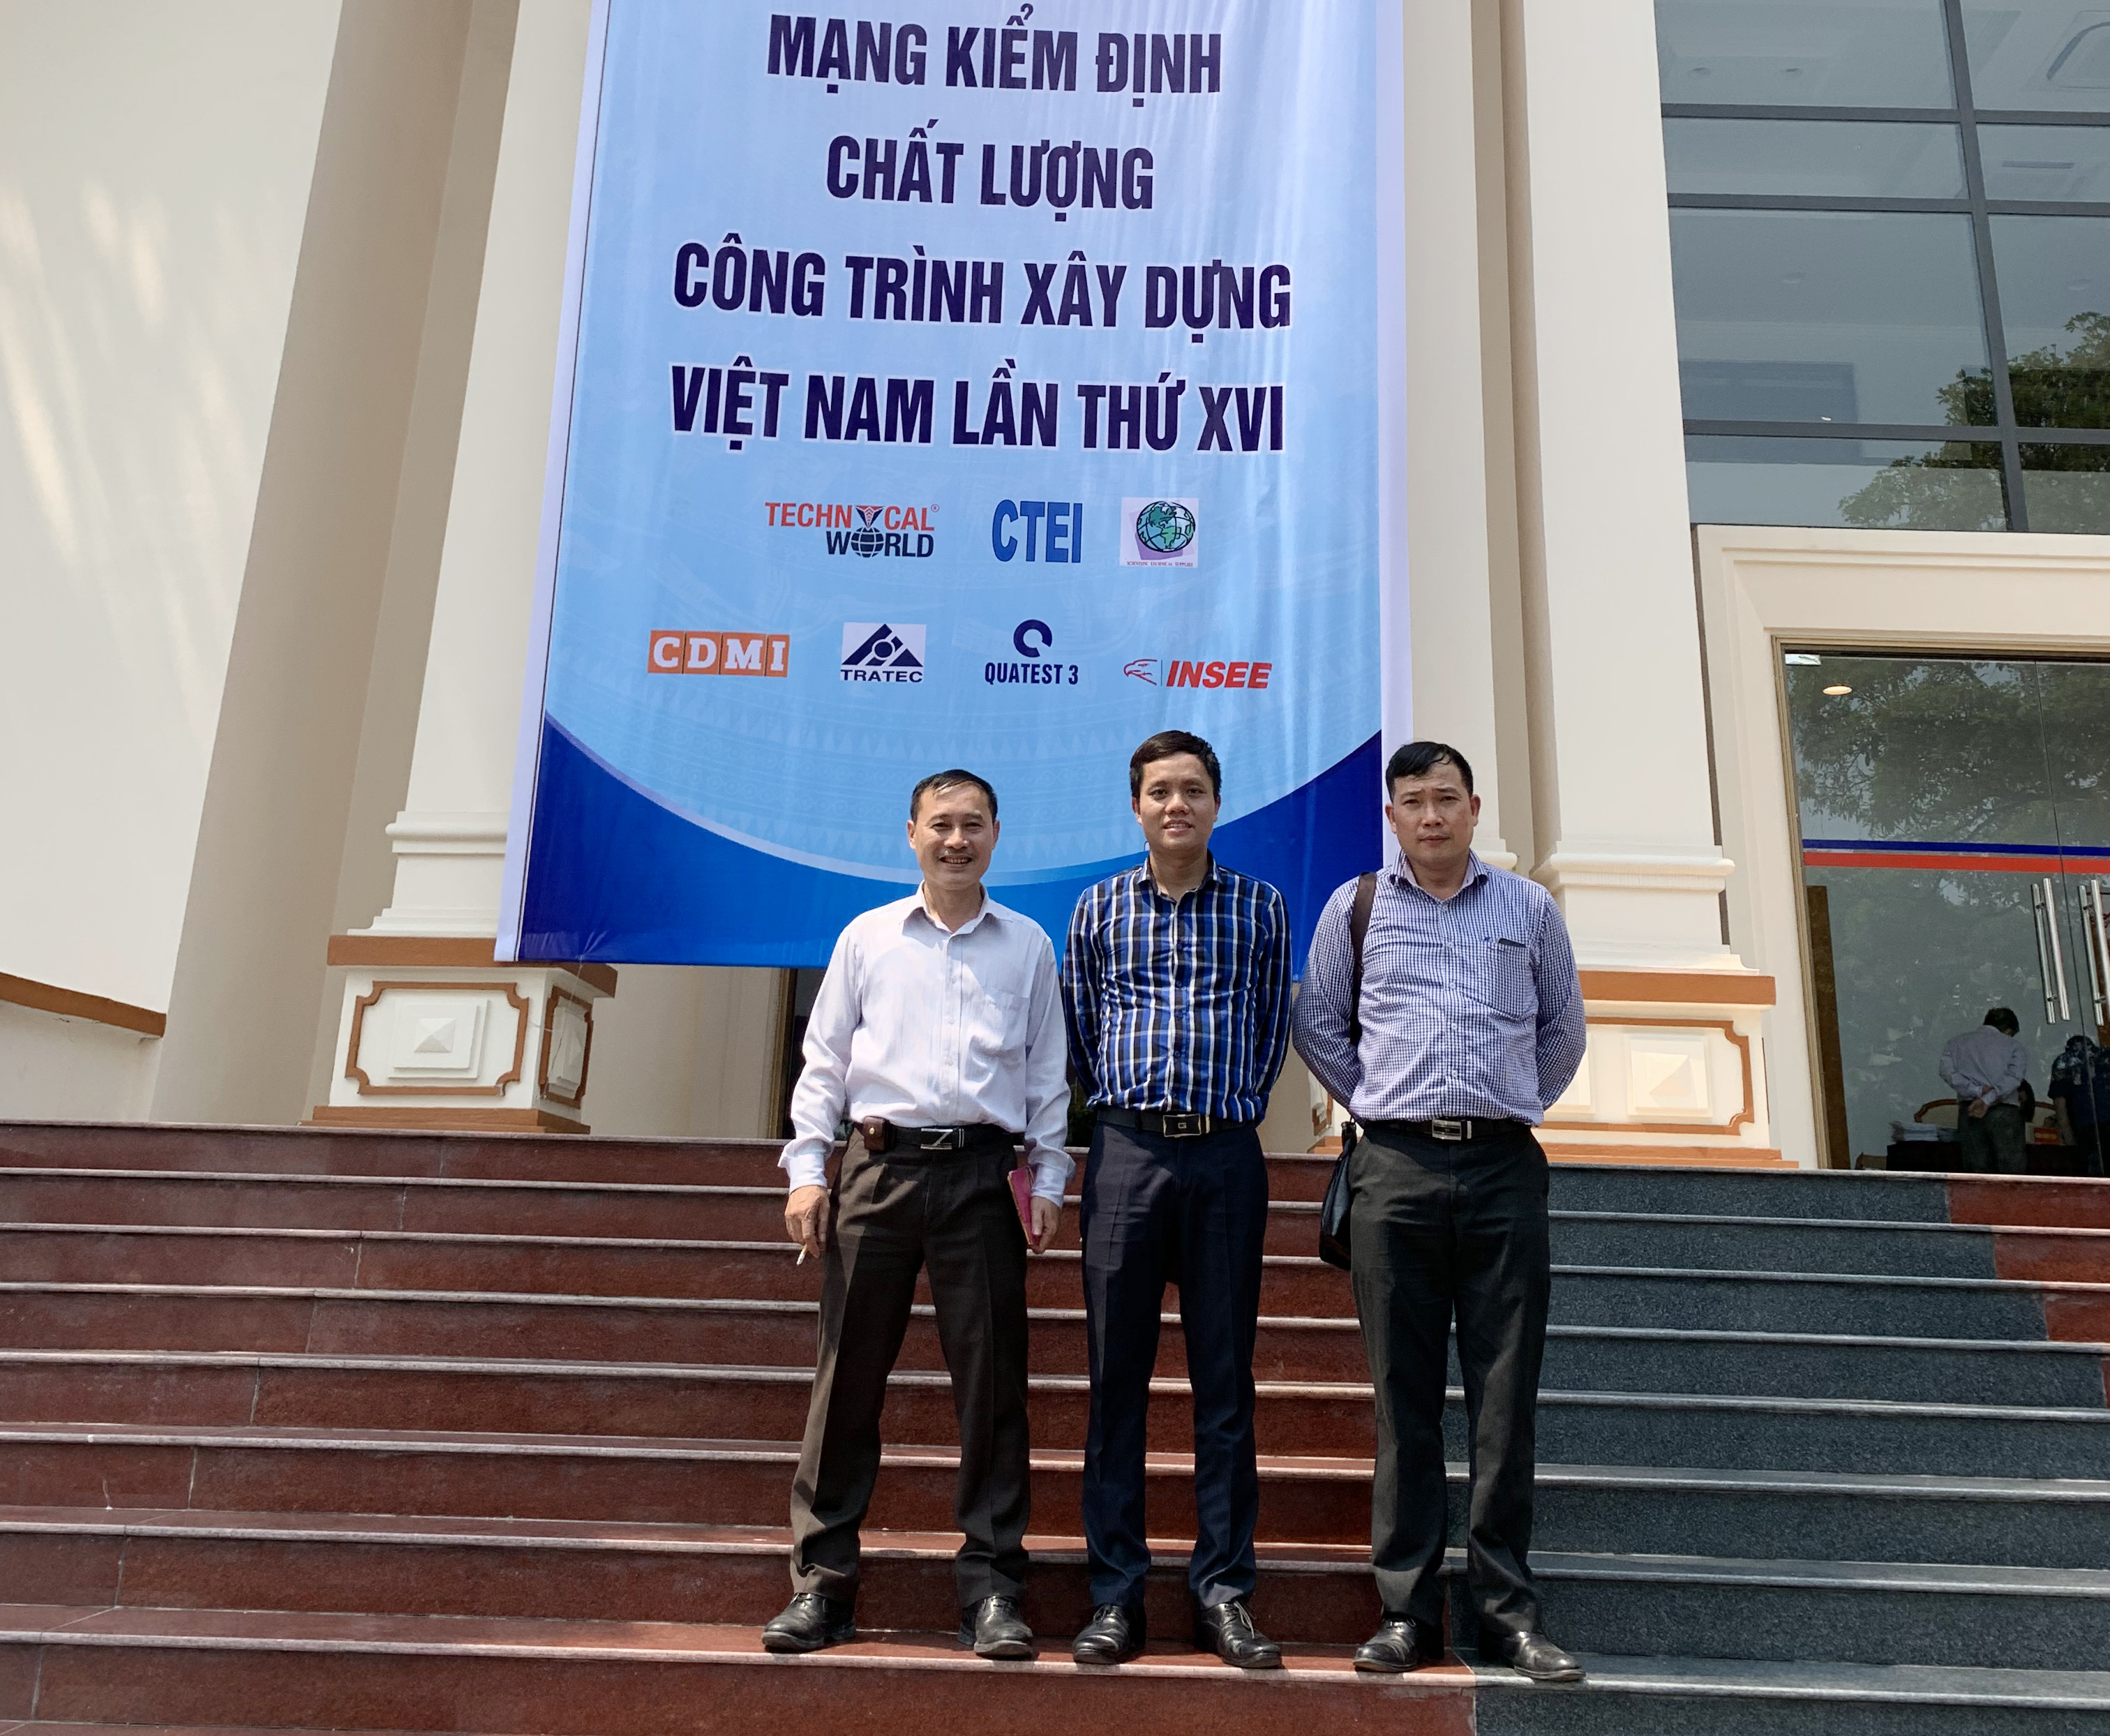 CONINCO tham dự Hội thảo thí nghiệm, kiểm định và quan trắc công trình xây dựng và Hội nghị thường niên Mạng kiểm định chất lượng công trình xây dựng Việt Nam lần thứ XVI